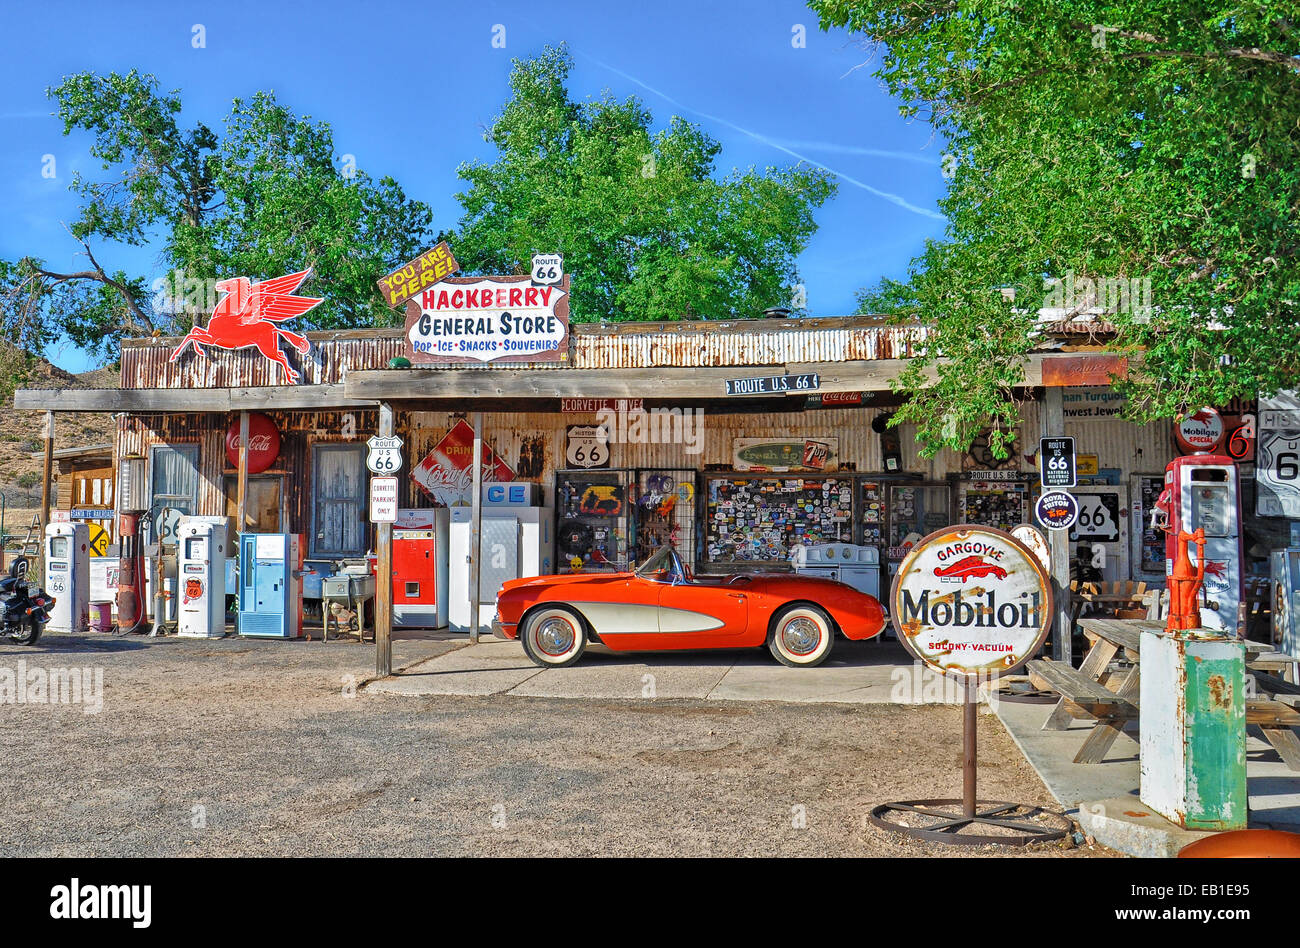 Une Corvette rouge 1957 l'extérieur du magasin général micocoulier antique sur la Route 66, Arizona Banque D'Images